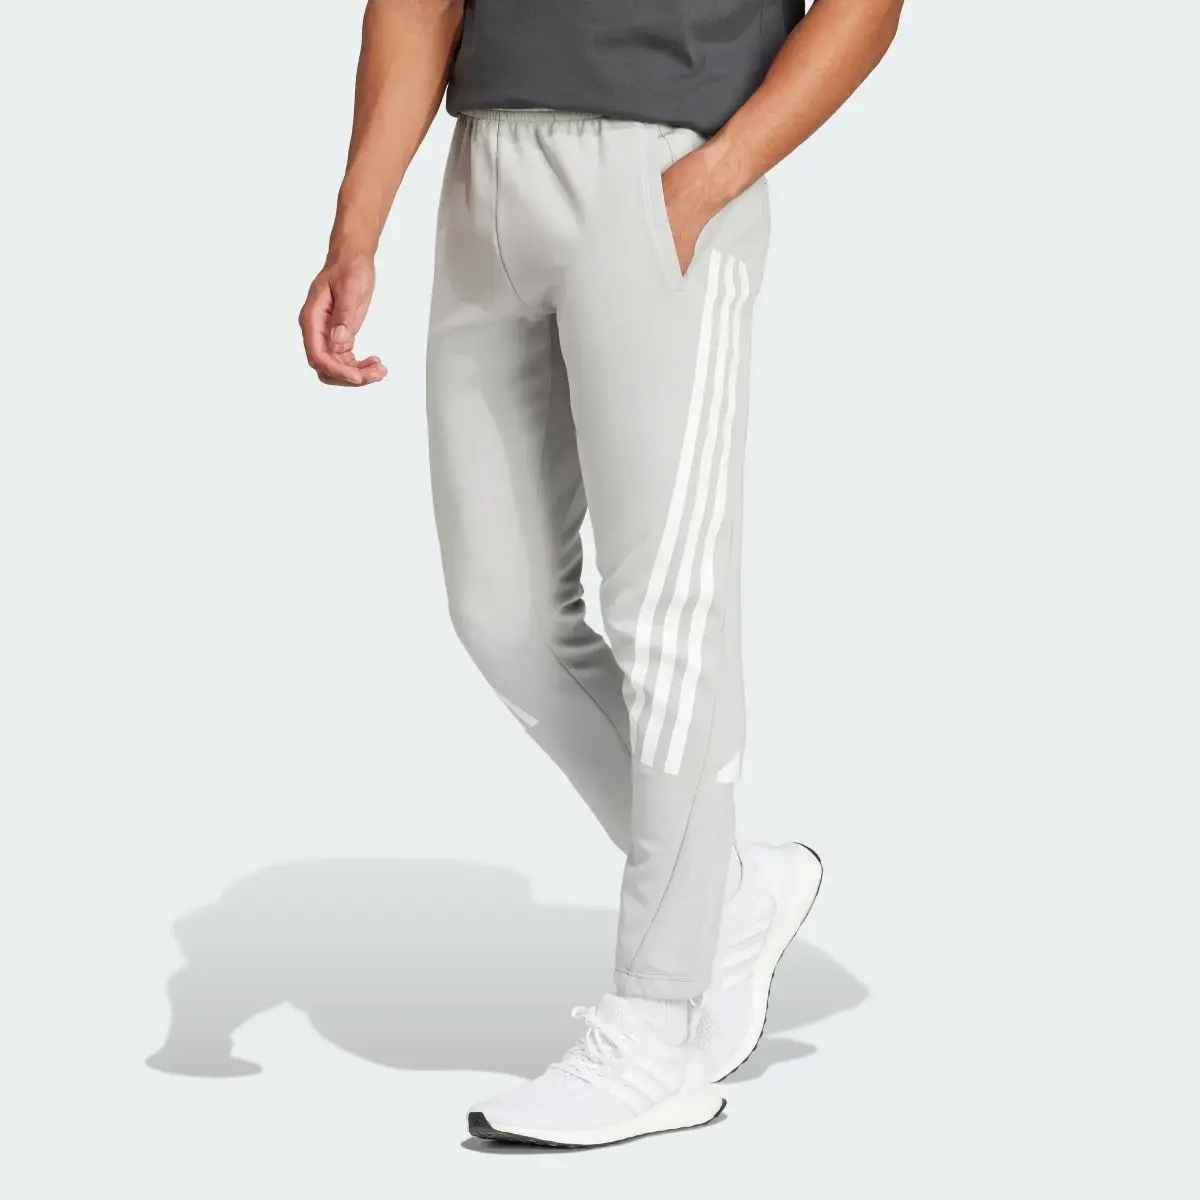 Adidas Future Icons 3-Streifen Hose. 1